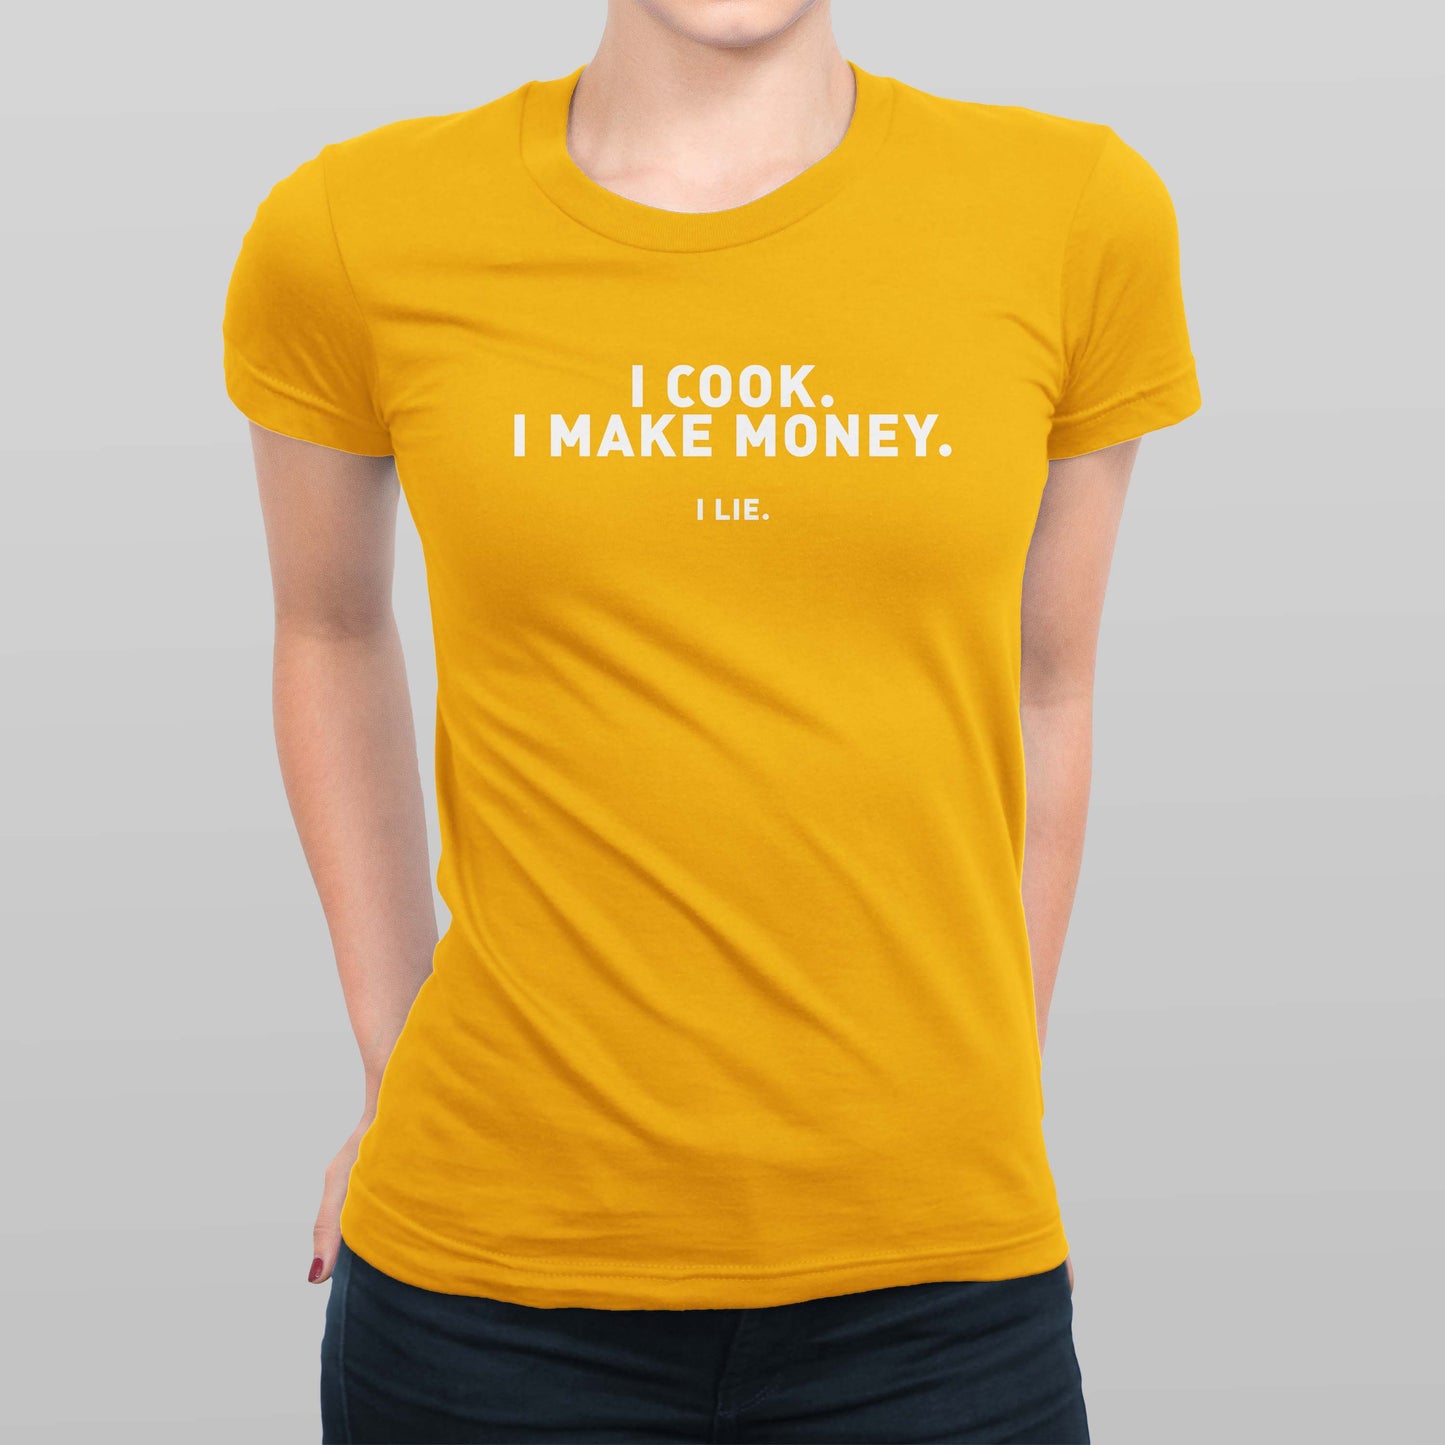 I Lie Women's T-shirt